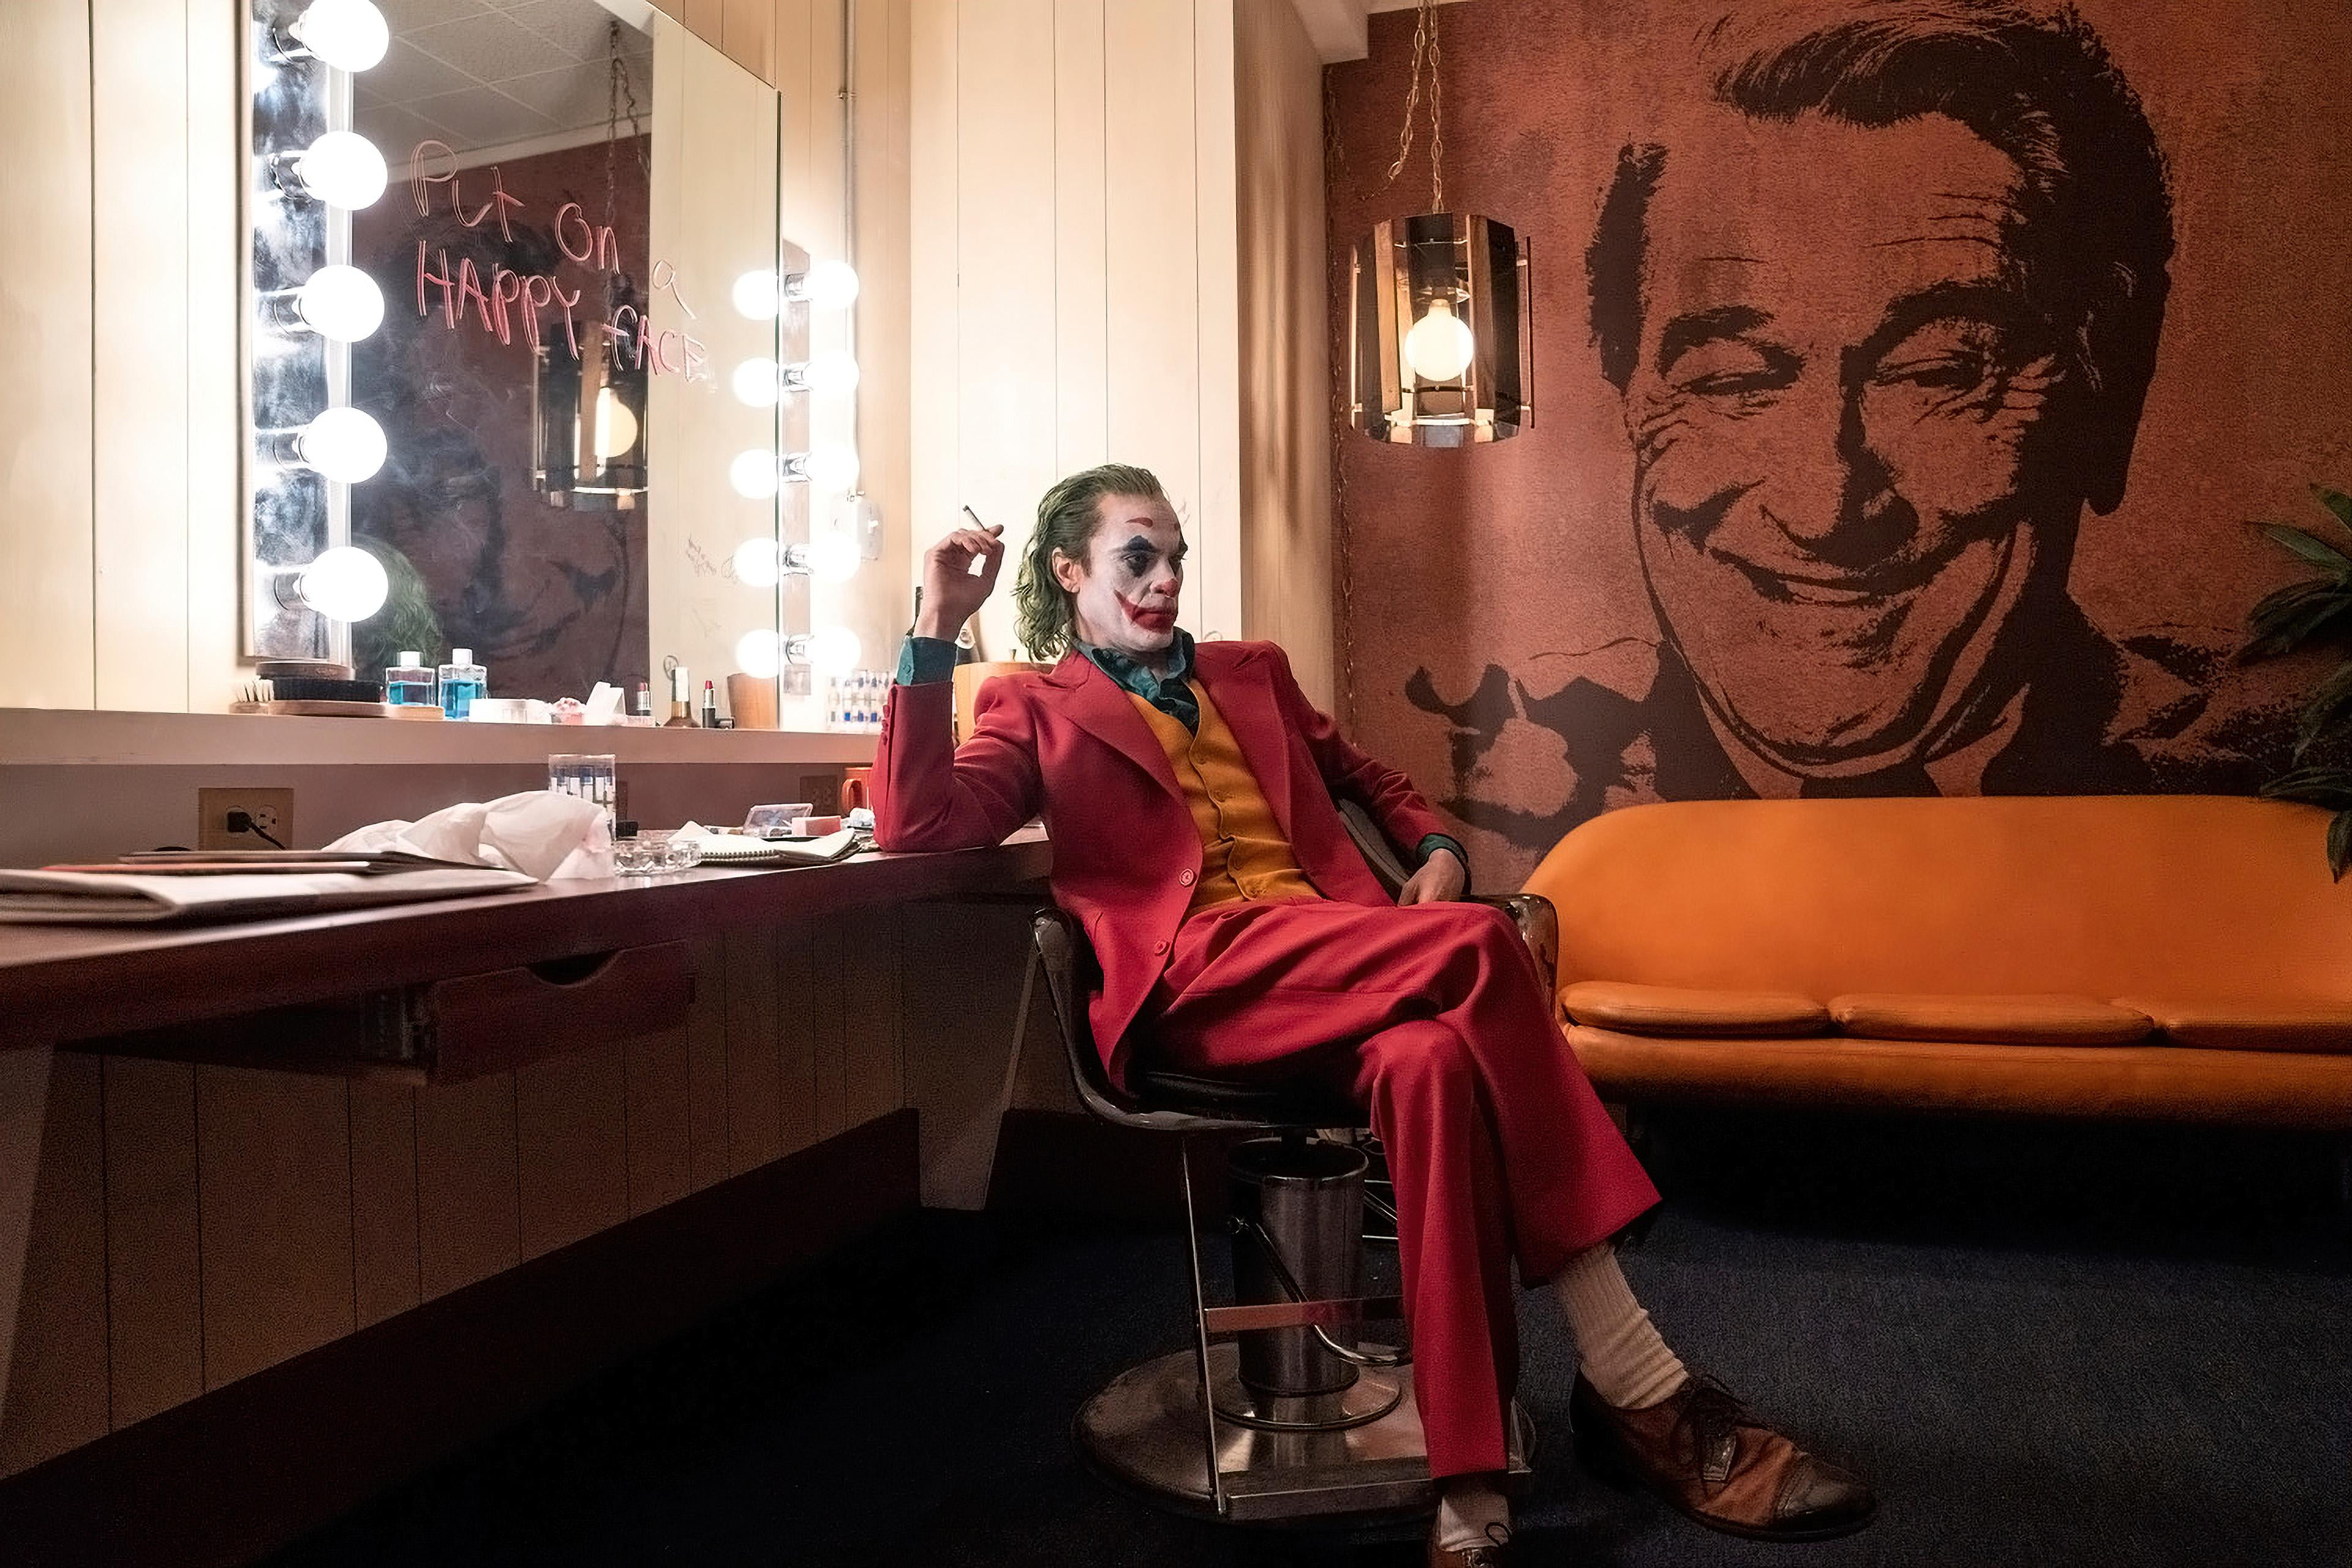 Joker, Robert DeNiro, happy face, Joaquin Phoenix, couch, makeup